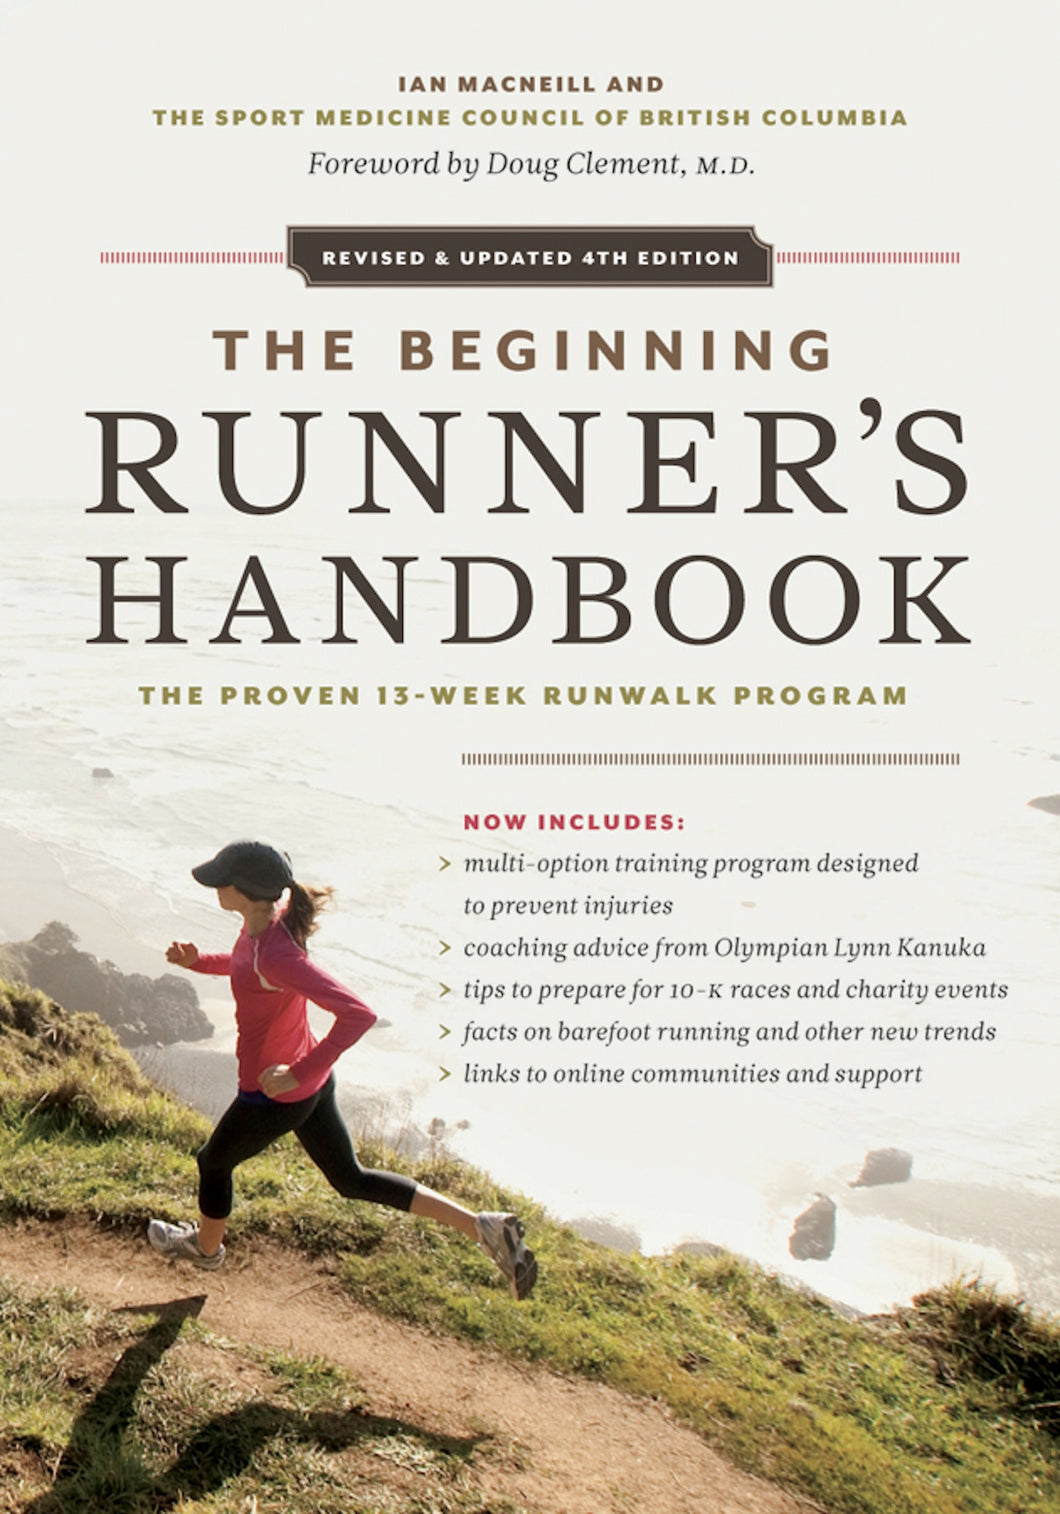 The Beginning Runner's Handbook